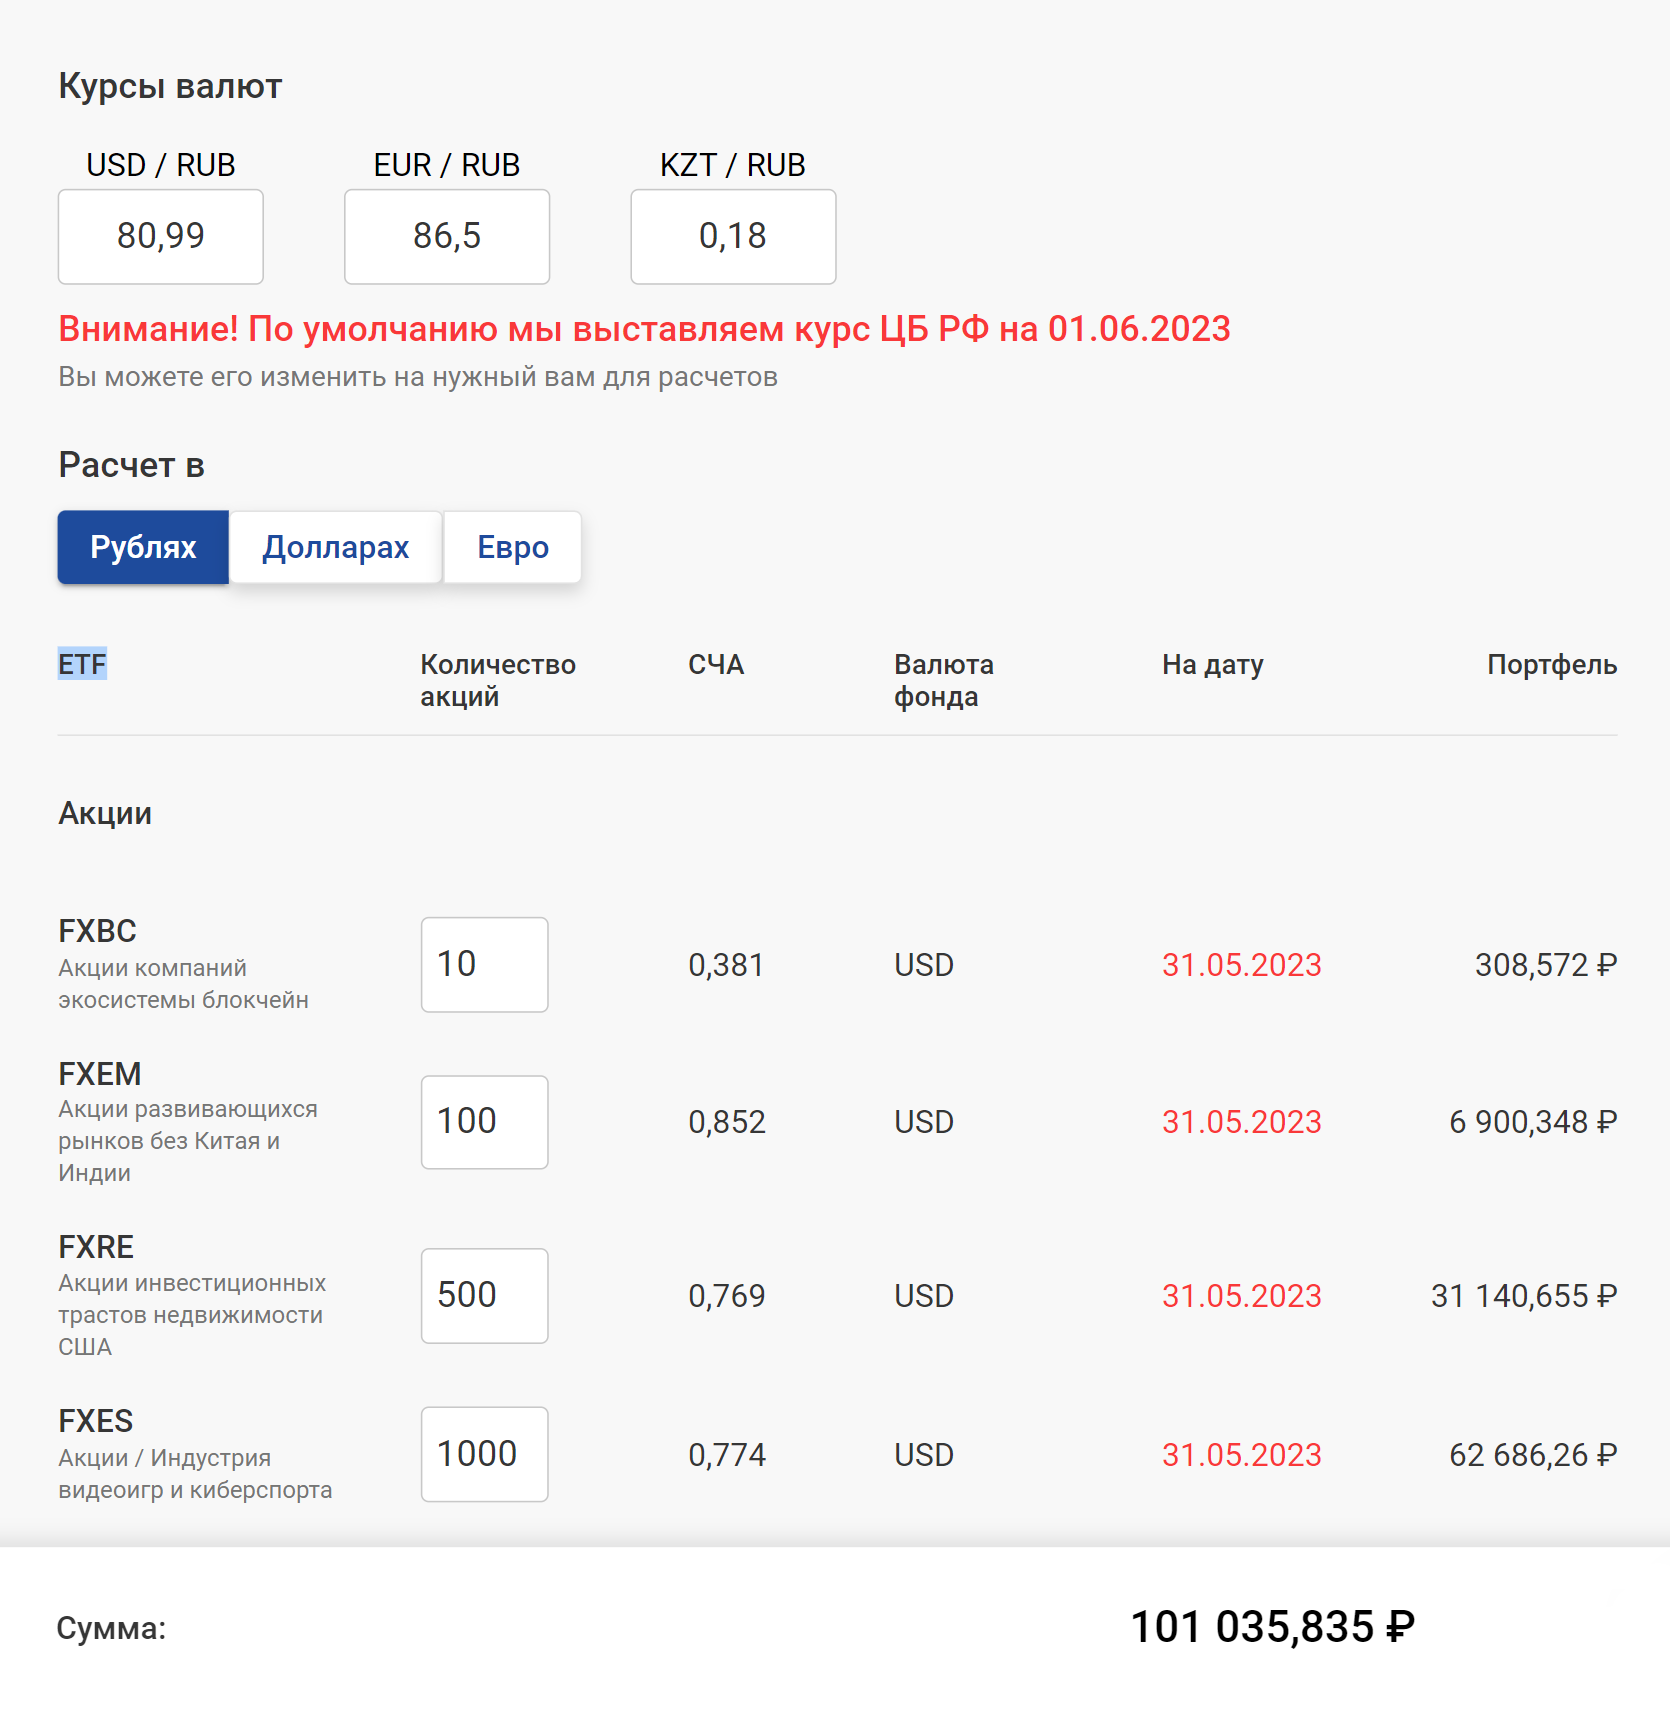 Как выглядит расчет актуальной стоимости портфеля из фондов FinEx. Количество паев указано для примера. Источник: finex‑etf.ru